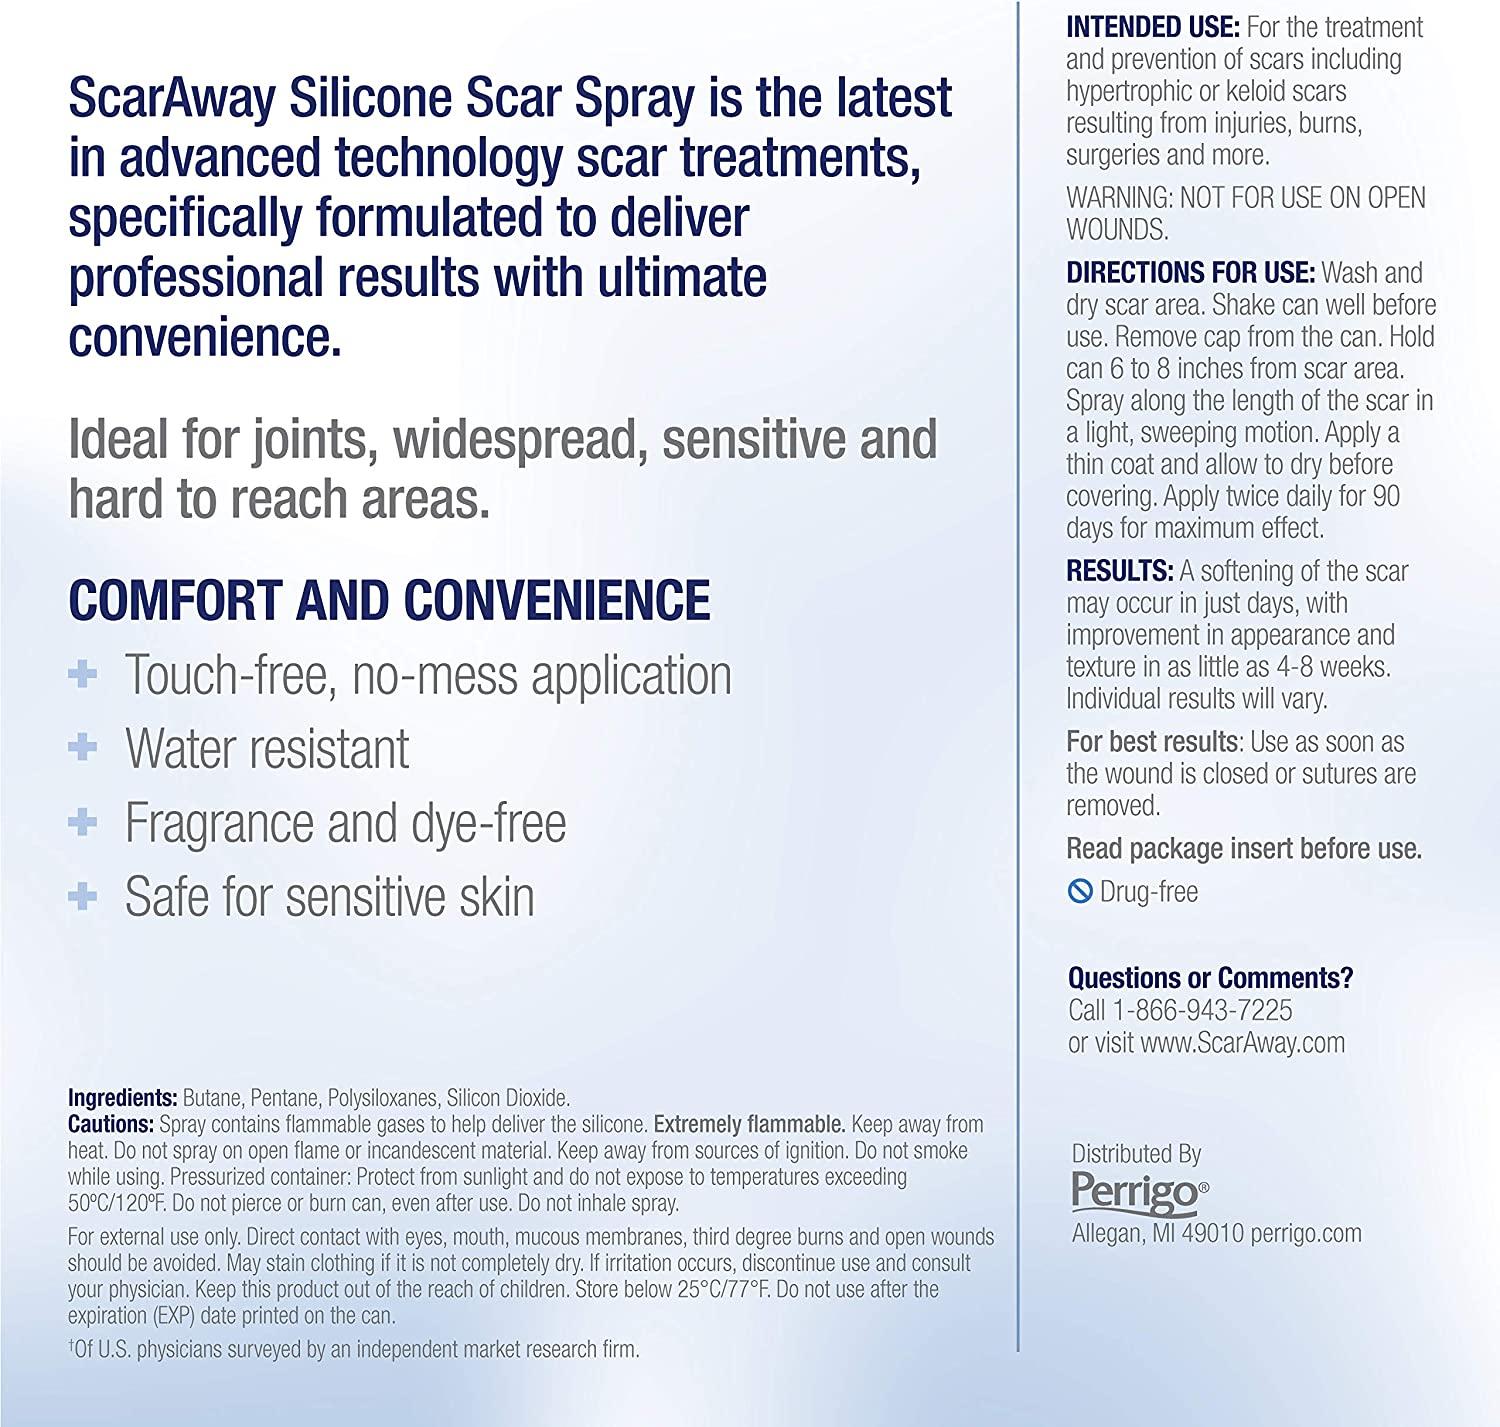 ScarAway Silicone Scar Spray